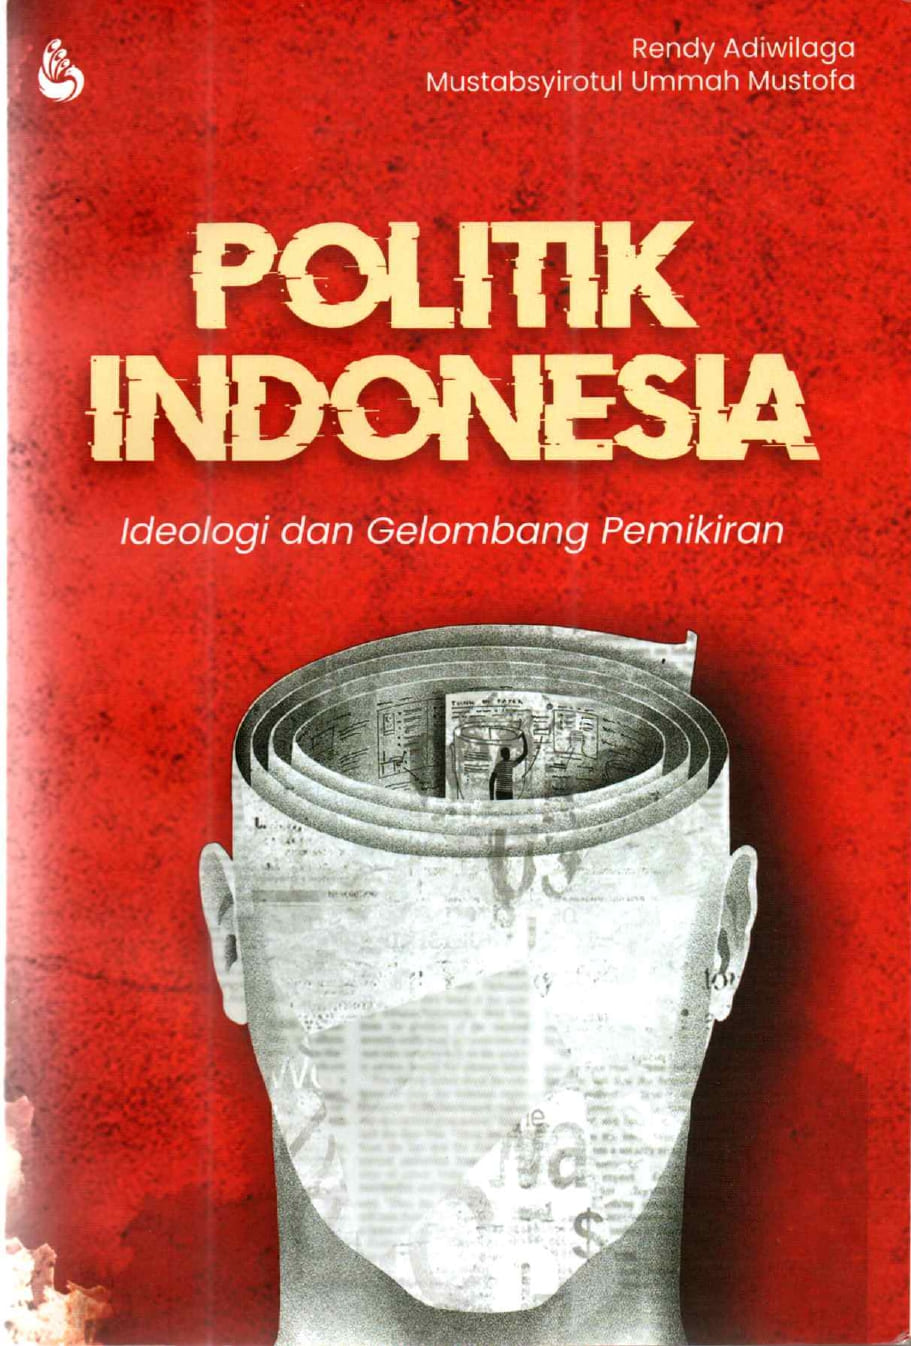 Politik Indonesia : Ideologi dan Gelombang Pemikiran